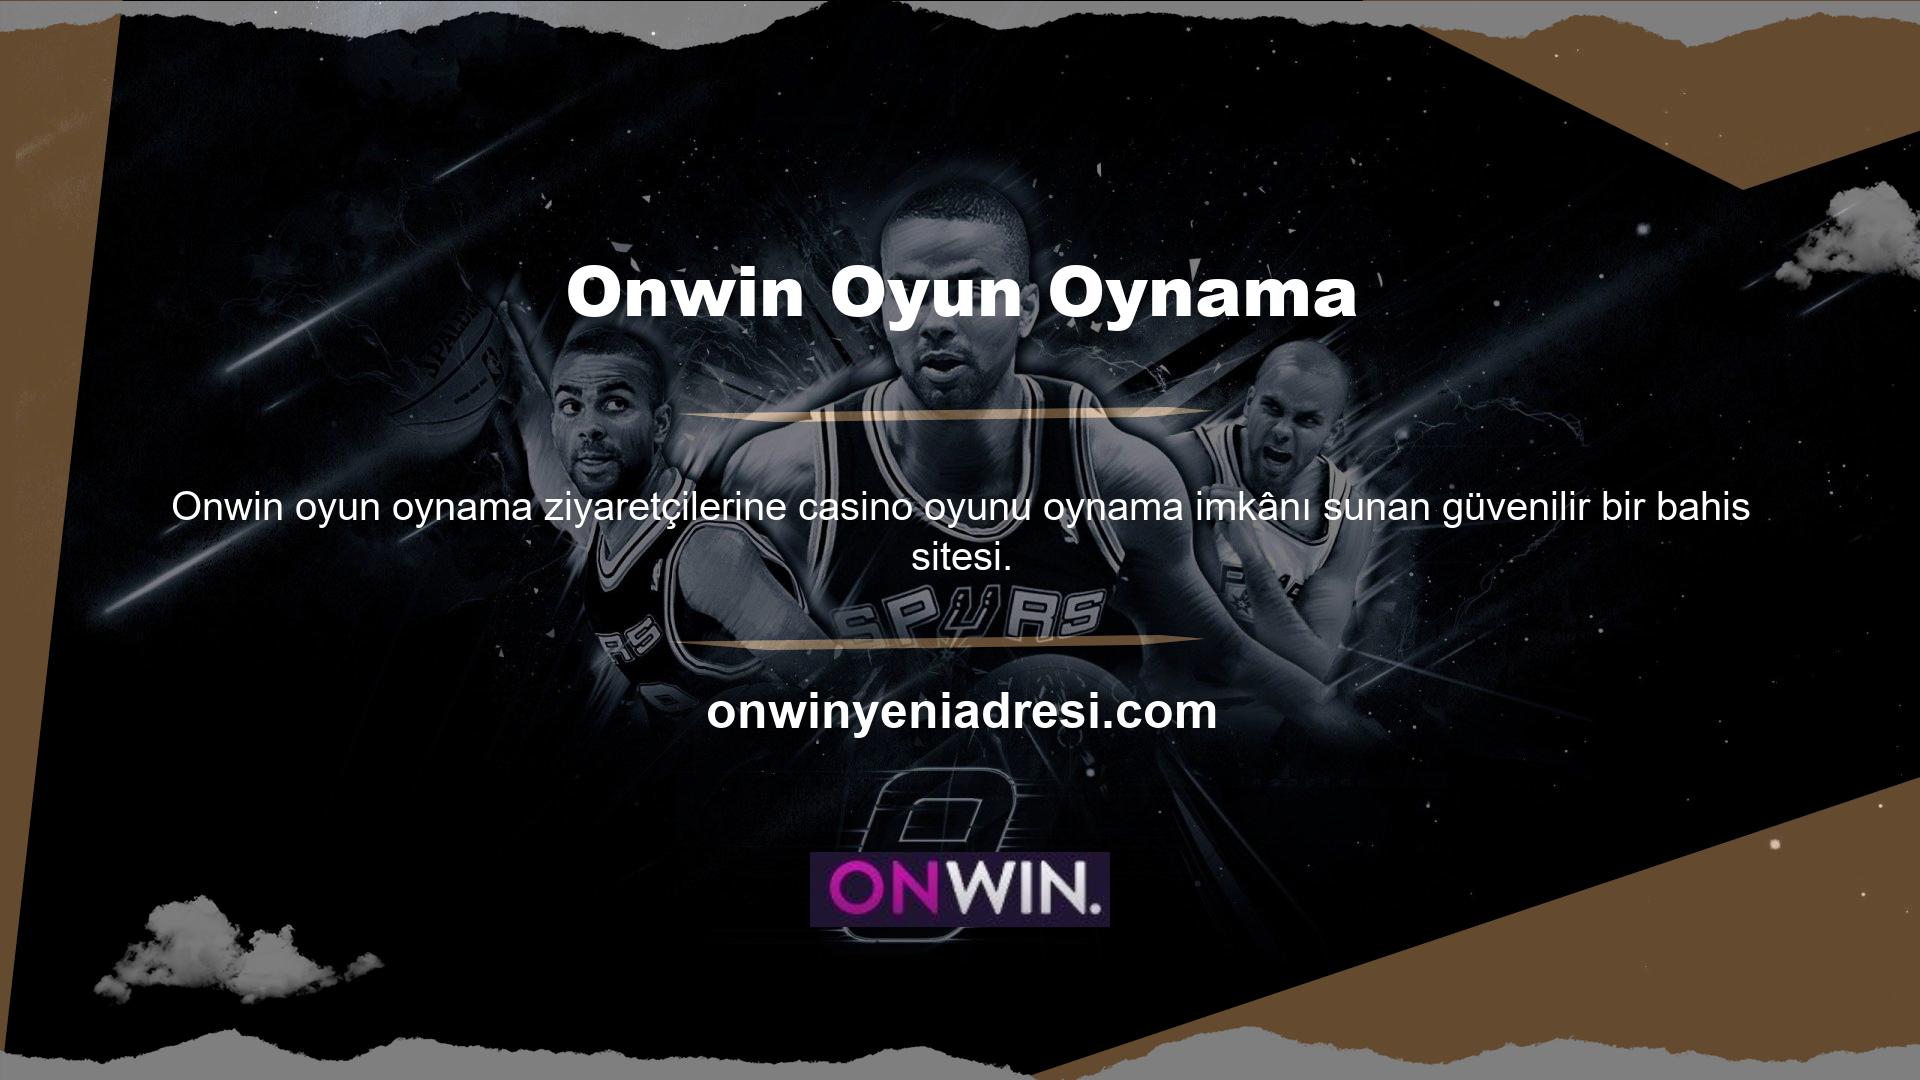 Kullanıcılar, olumlu yorum sayısının fazla olması nedeniyle Onwin yatırımına erişebilir ve ödeme garantisi alabilir